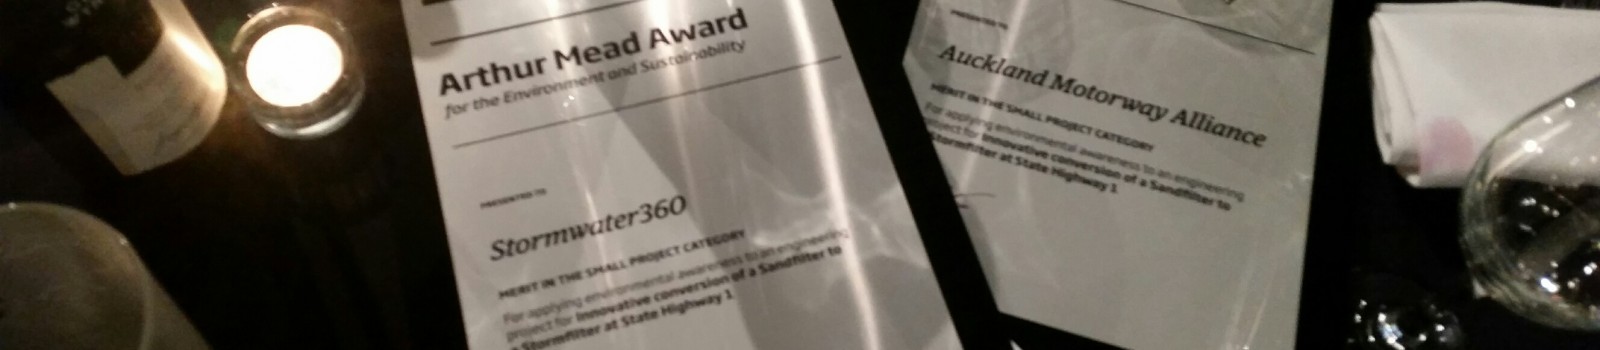 Arthur Mead Environmental Awards – a collaborative recognition